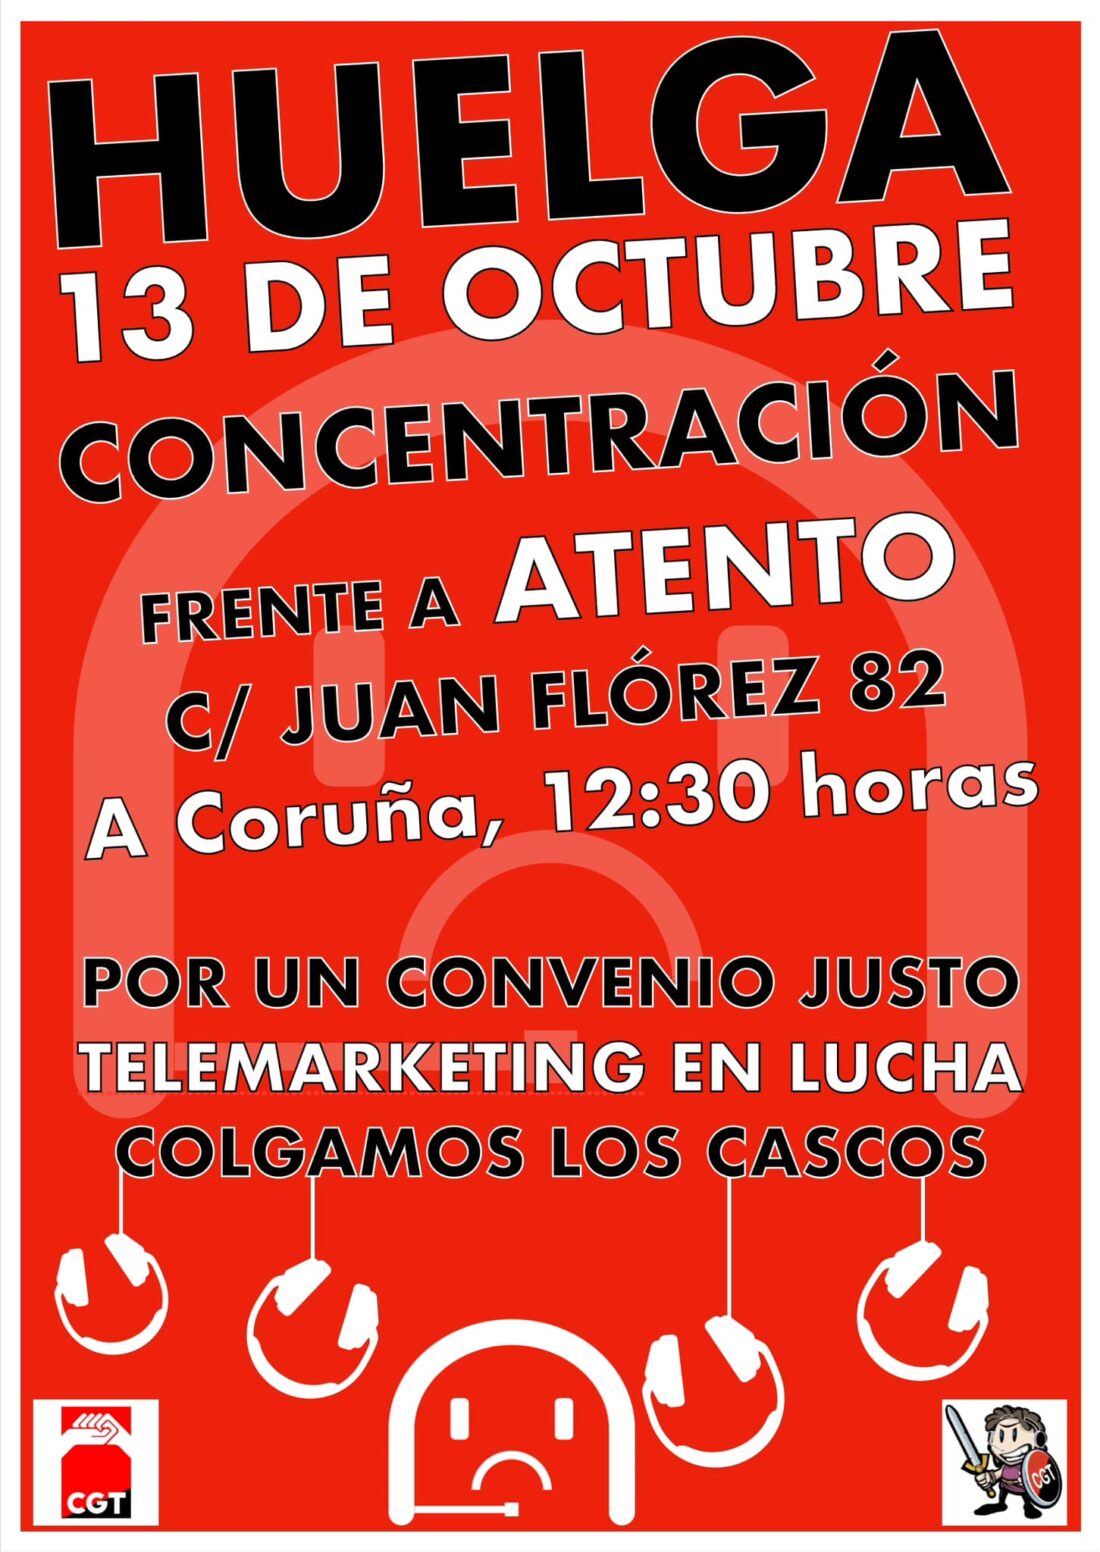 13-O: Huelga de 24 horas en telemarketing y concentración delante de Atento Coruña